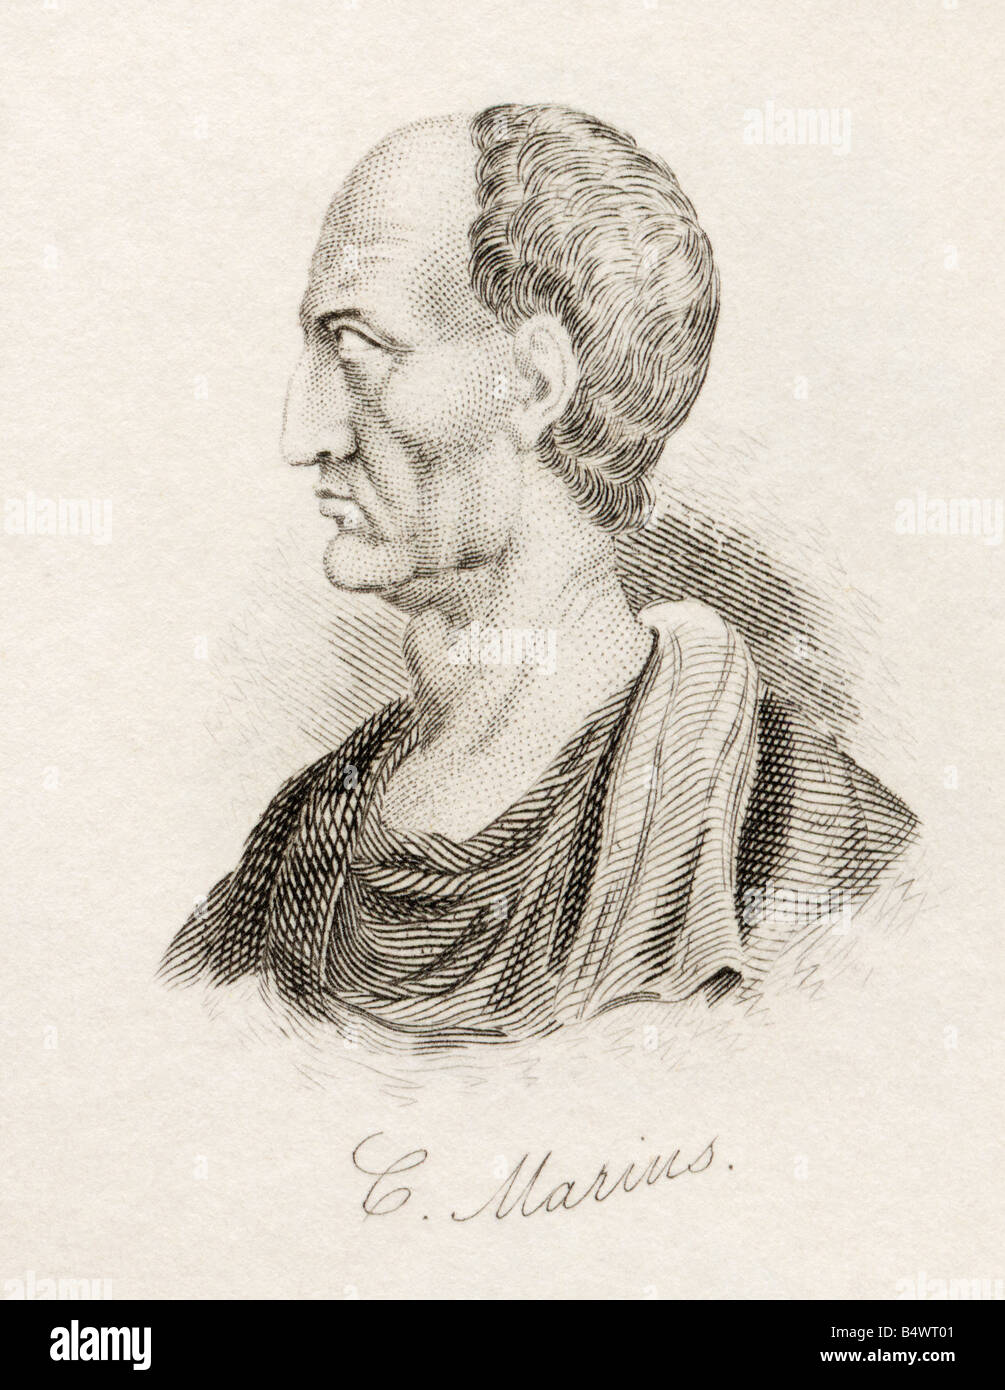 Gaius Marius, 157 v. Chr. - 86 v. Chr. Römischer General und Politiker. Aus dem Buch Crabbs Historical Dictionary, veröffentlicht 1825. Stockfoto